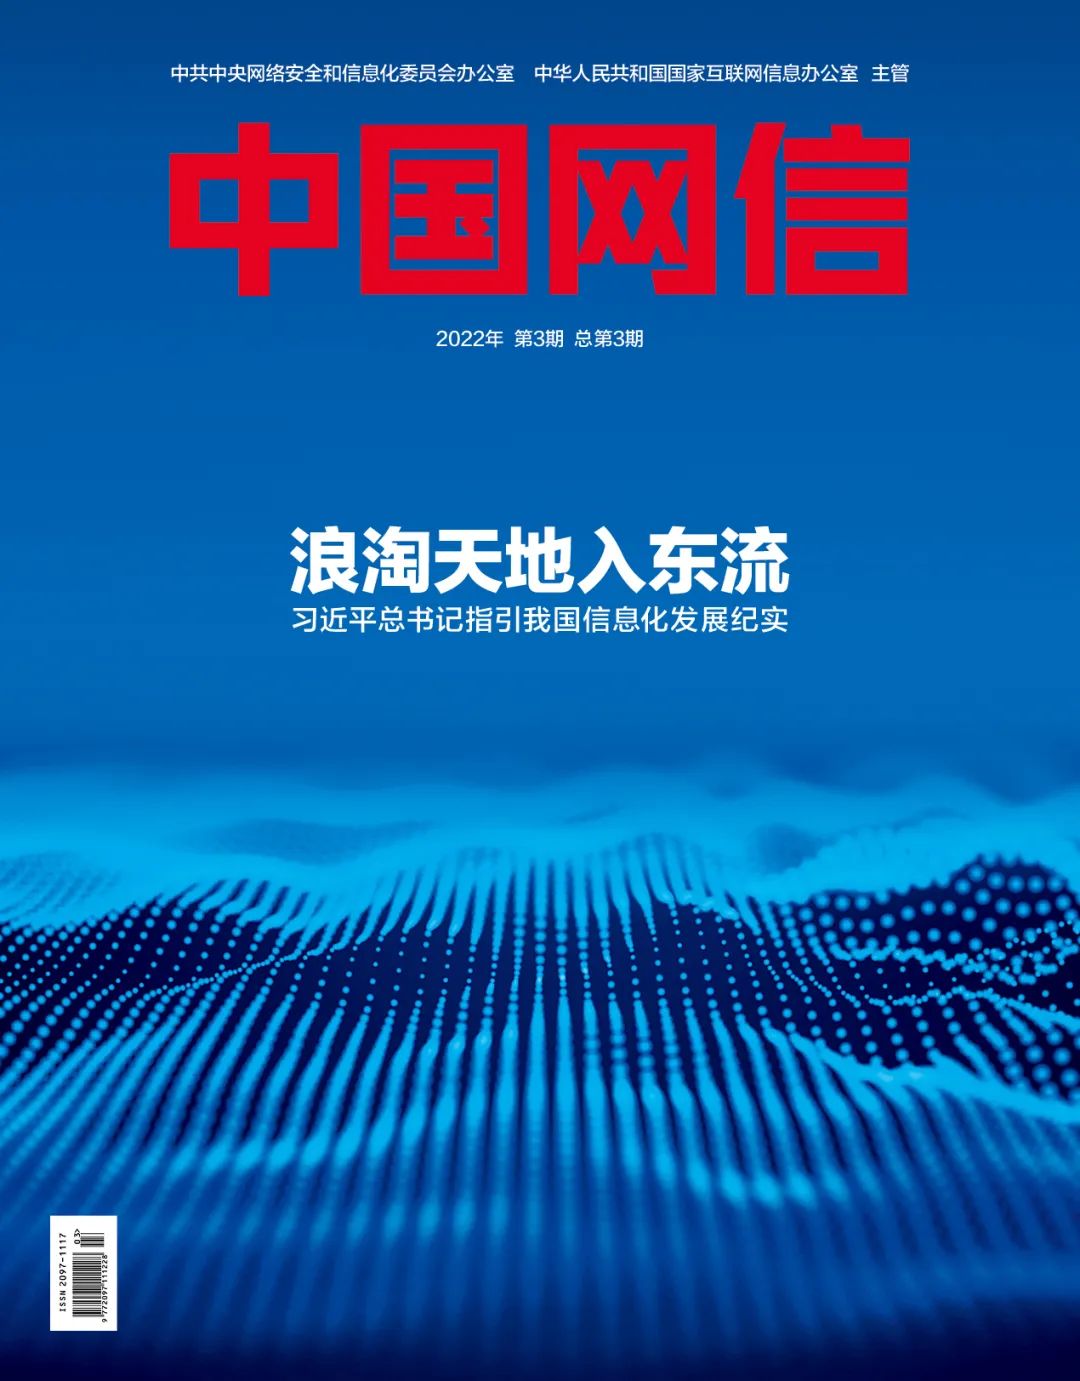 《中國網信》雜誌發表《習近平總書記指引中國信息化發展紀實》